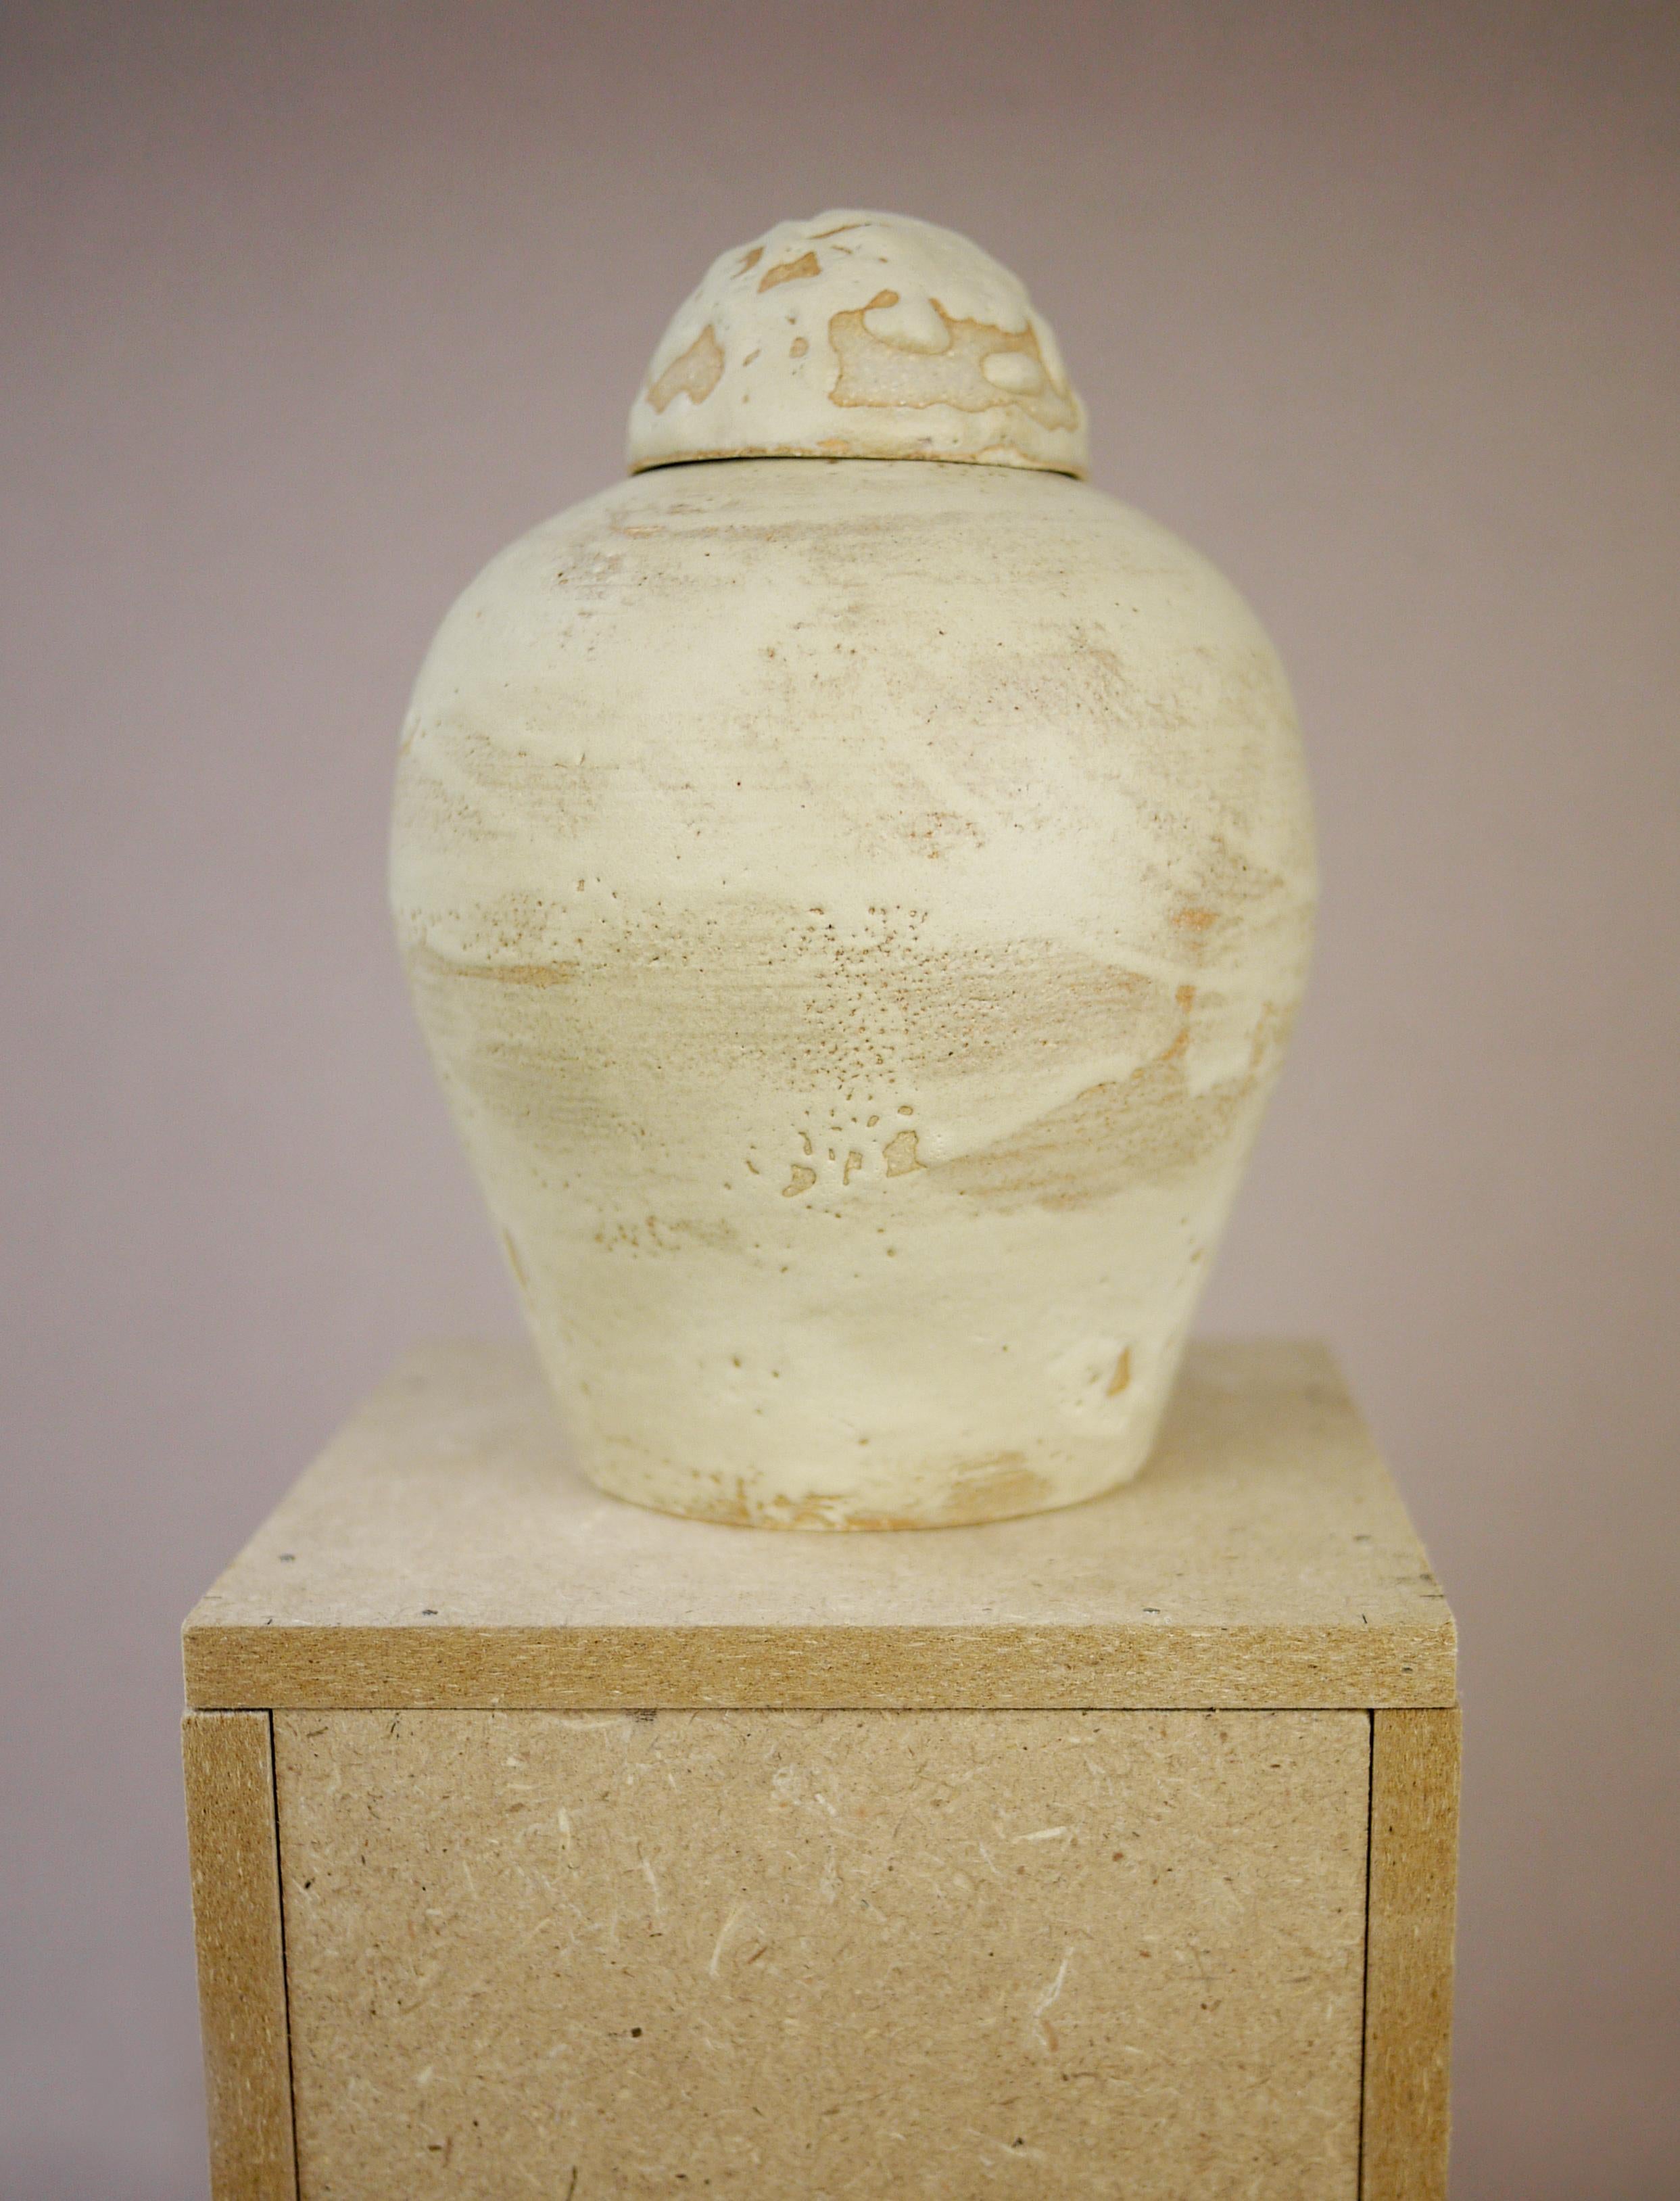 Inspiré par le centenaire de la découverte de la tombe de Toutankhamon, ce vase à couvercle est un clin d'œil aux pots canopes de l'Égypte ancienne.
Grès blanc et glaçure mate de couleur sable.
2022

///
Juliette Teste 
Française, 1986, vit et